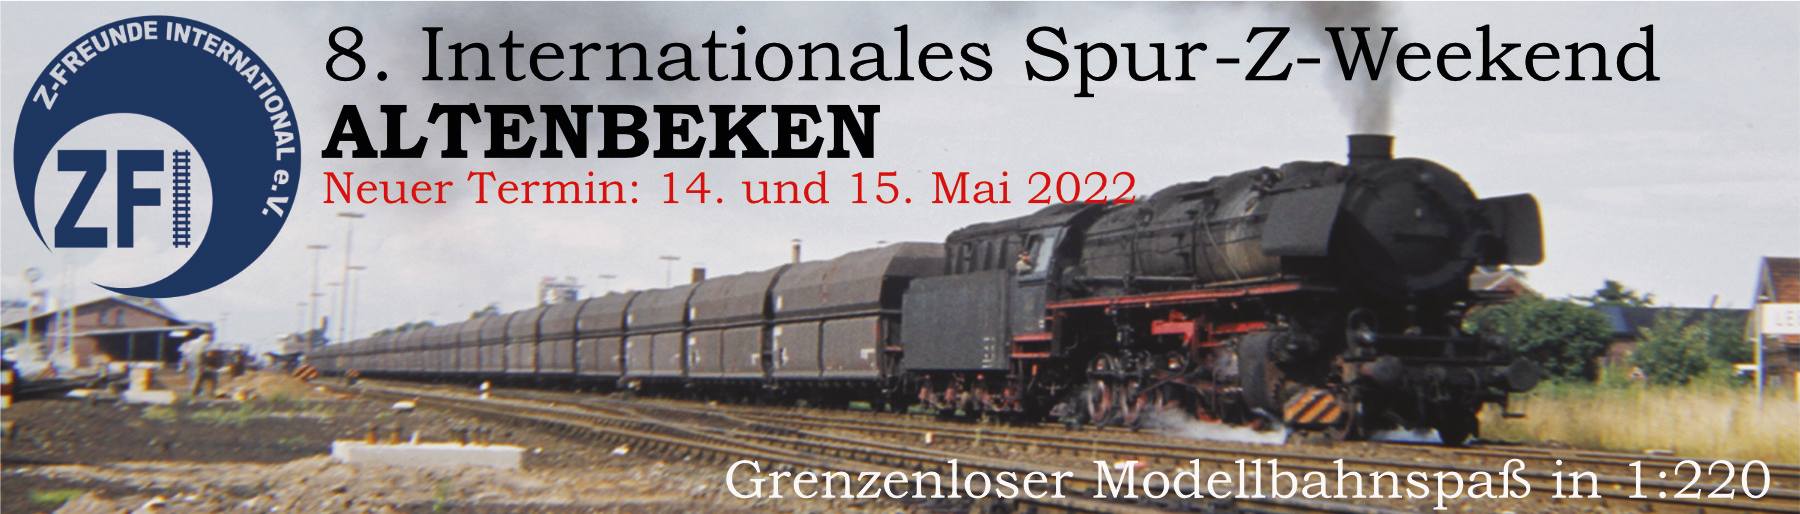 8. Int. Spur-Z-Weekend Altenbeken 2022 – Einlassbedingungen